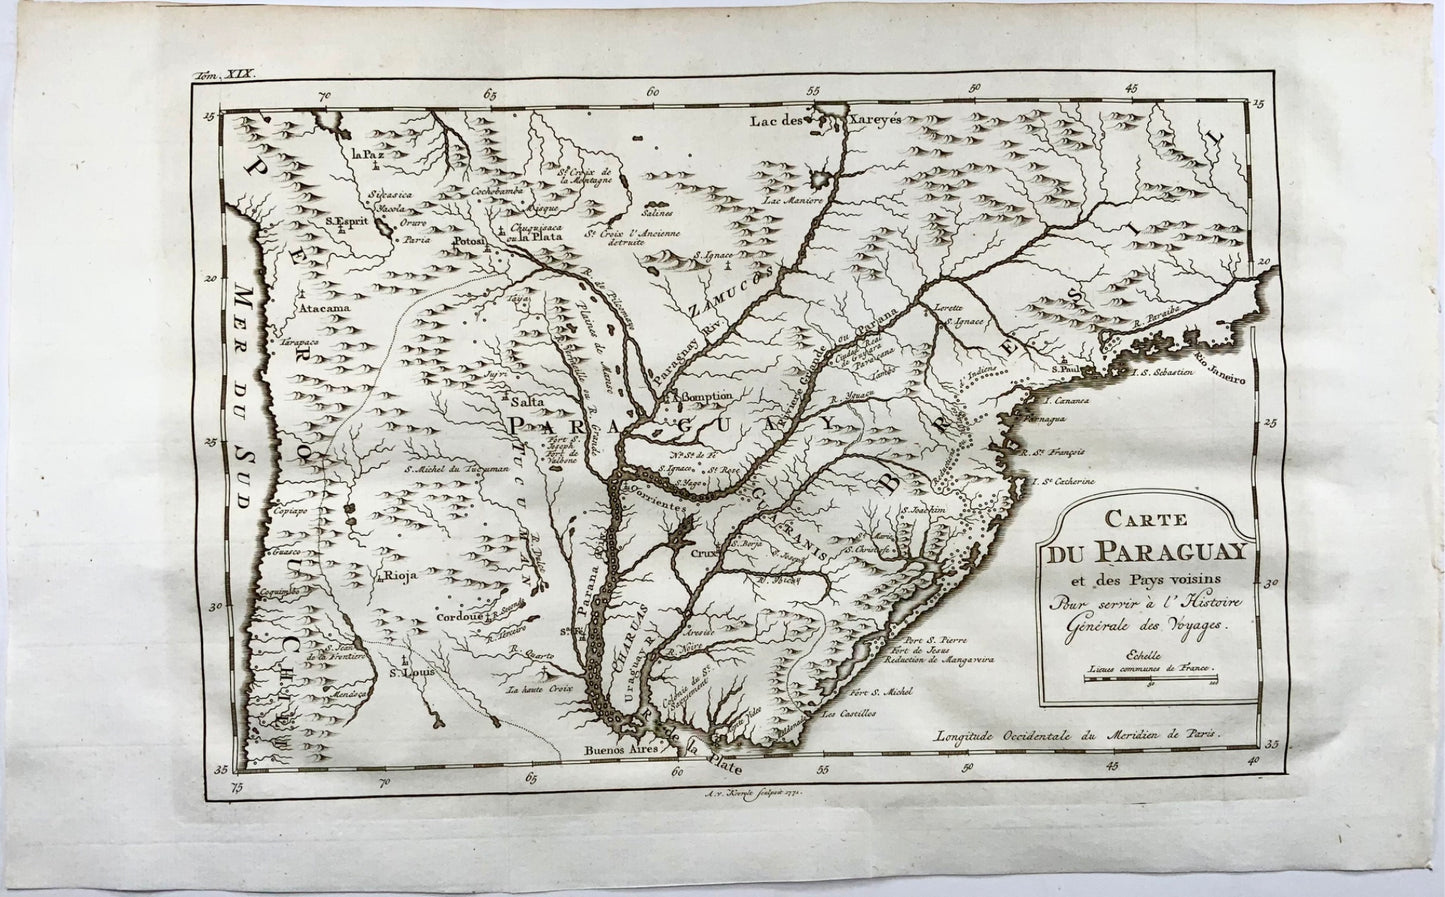 1771 Bellin, Carte du Paraguay, [ Brasile, Perù, Cile, Uruguay ] mappa 